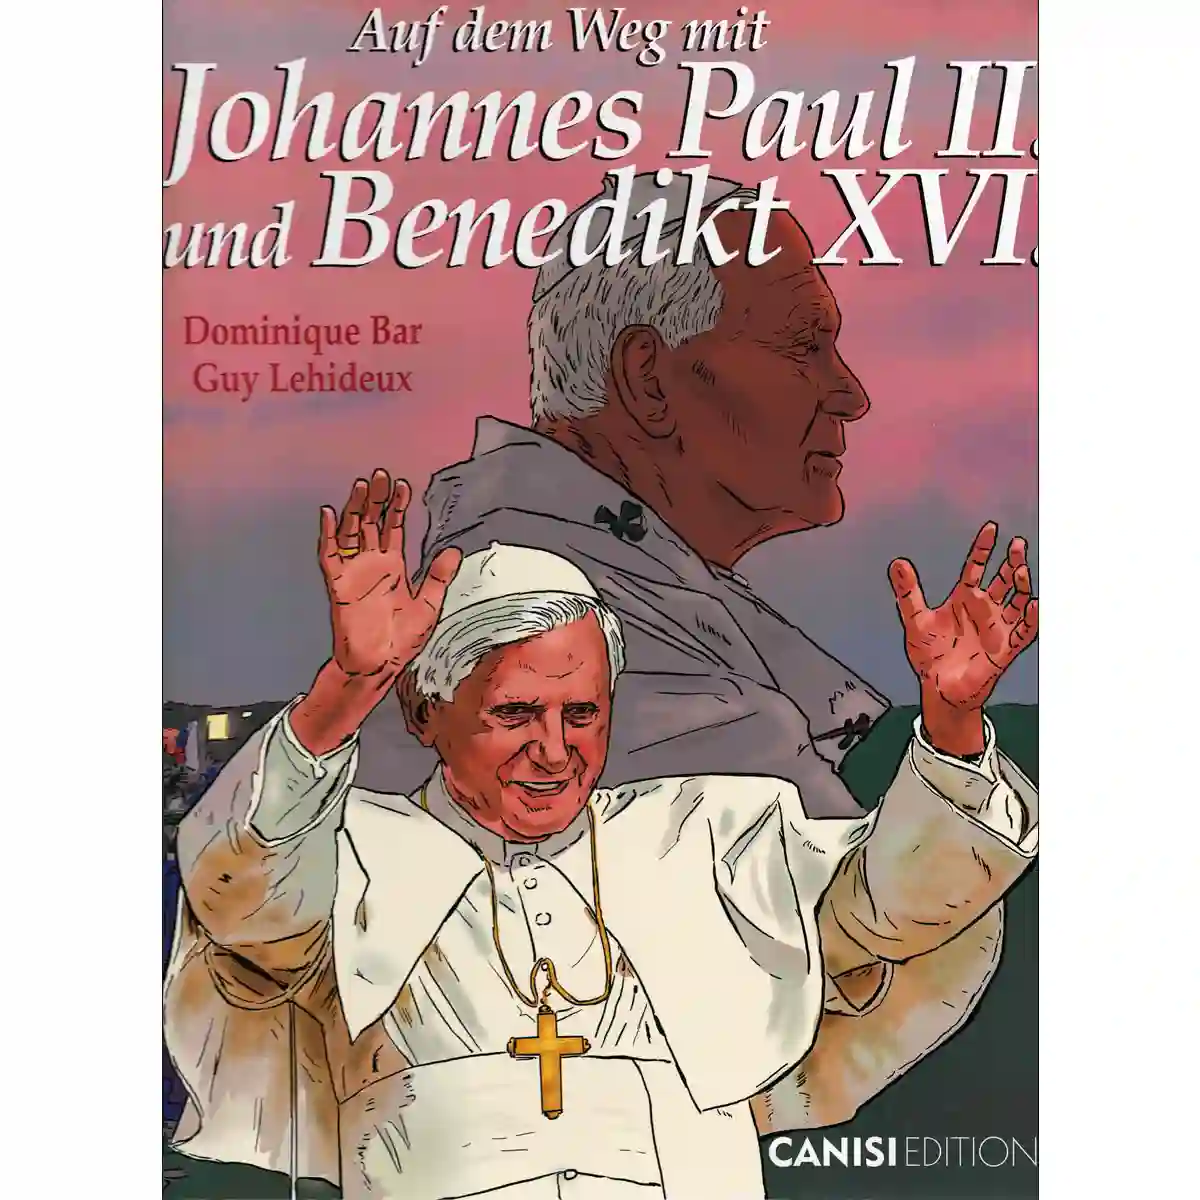 Auf dem Weg mit Johannes Paul II und Benedikt XVI